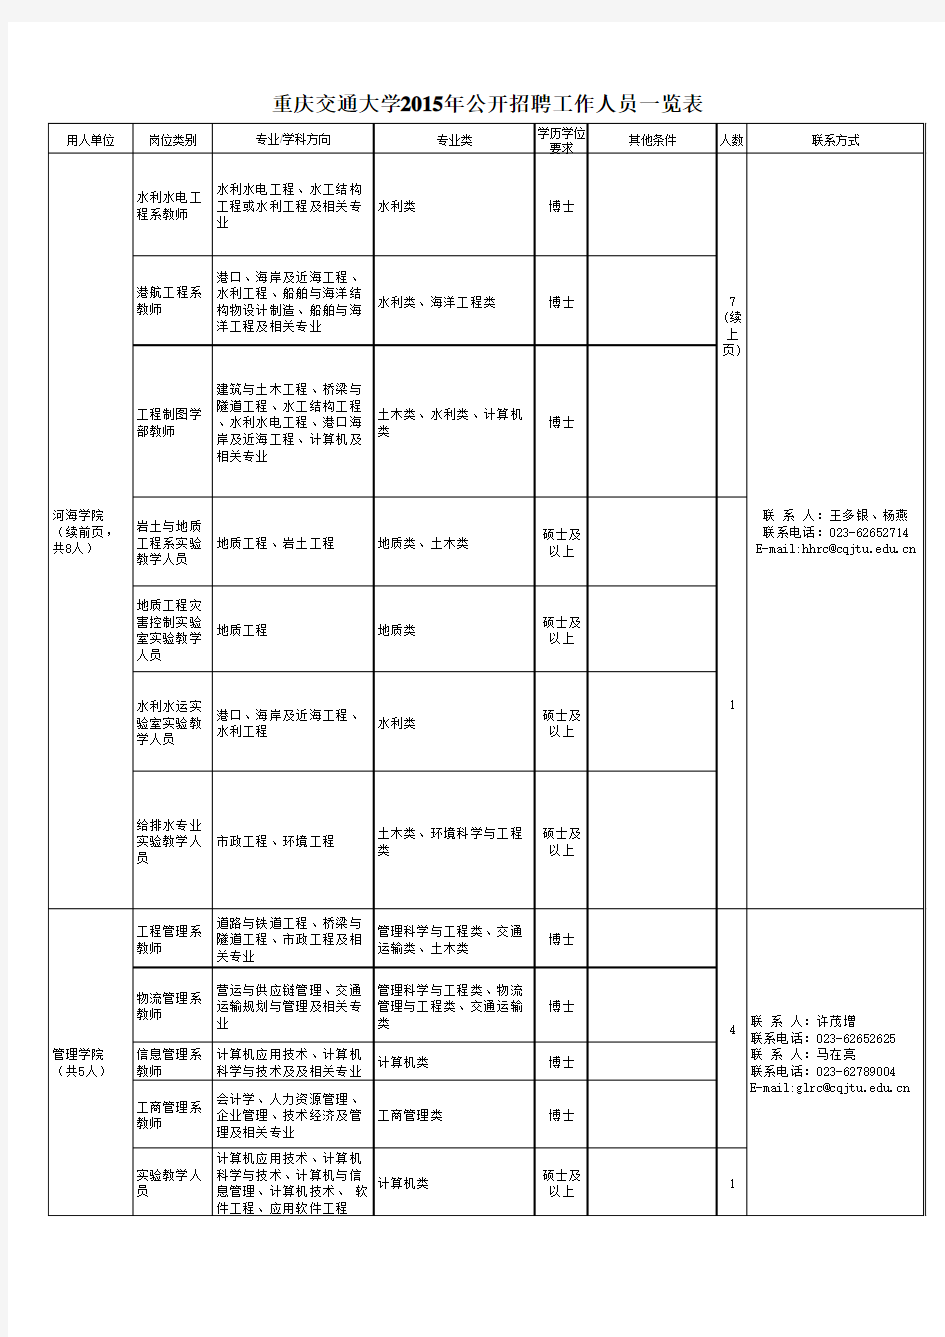 重庆交通大学2015年公开招聘工作人员一览表(发布)